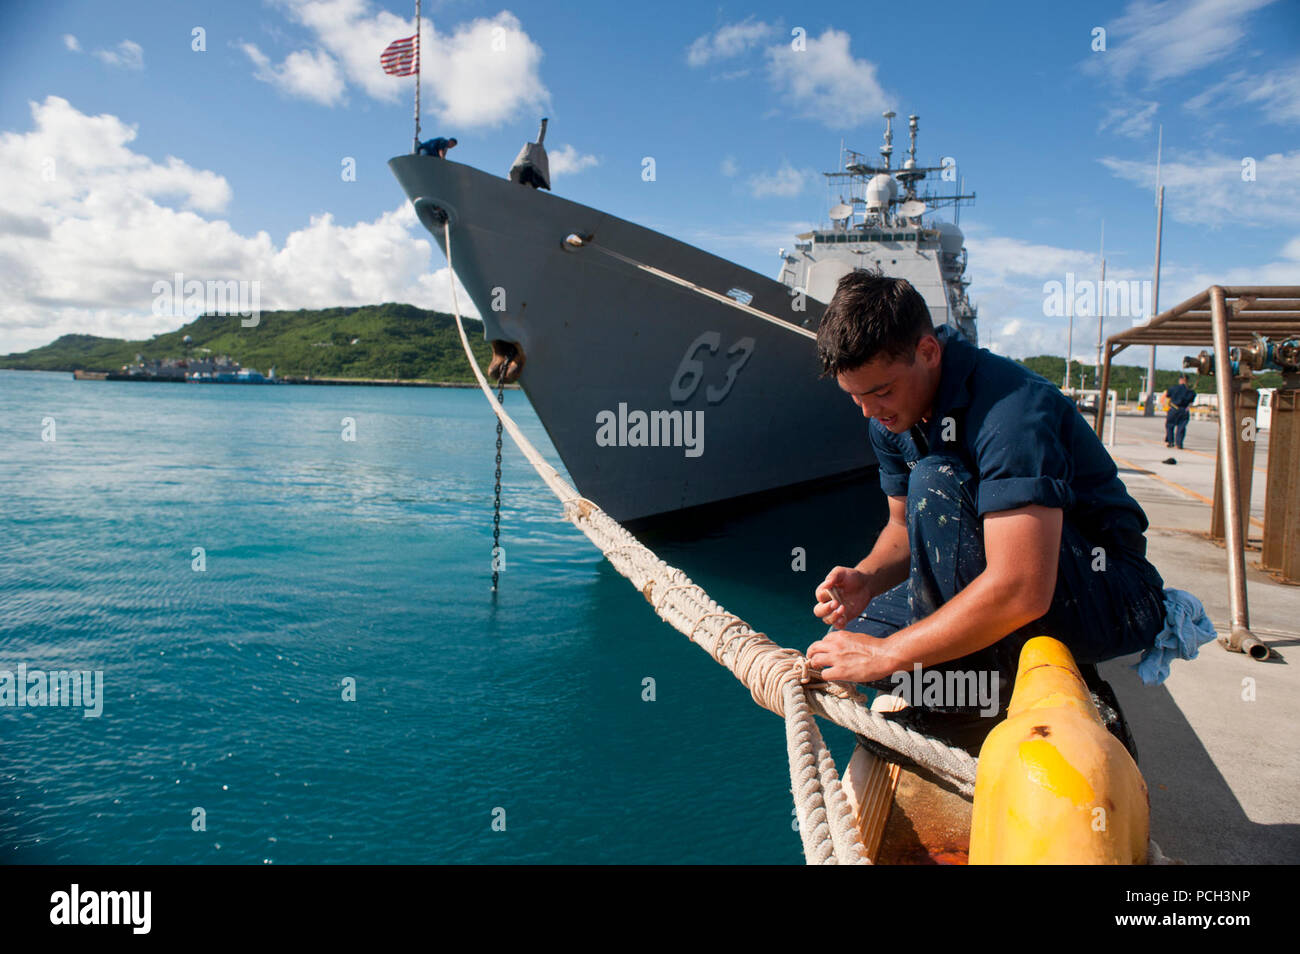 OKINAWA, Japan (Juli 23, 2012) Seaman Recruit James McGrath wickelt die Haltetaue der Ticonderoga-Klasse geführte-missile Cruiser USS Cowpens (CG63) kurz nachdem das Schiff vertäut Pier-Seite. Cowpens freut - Yokosuka, Japan eingesetzt und arbeitet in den USA 7 Flotte Verantwortungsbereich. Stockfoto